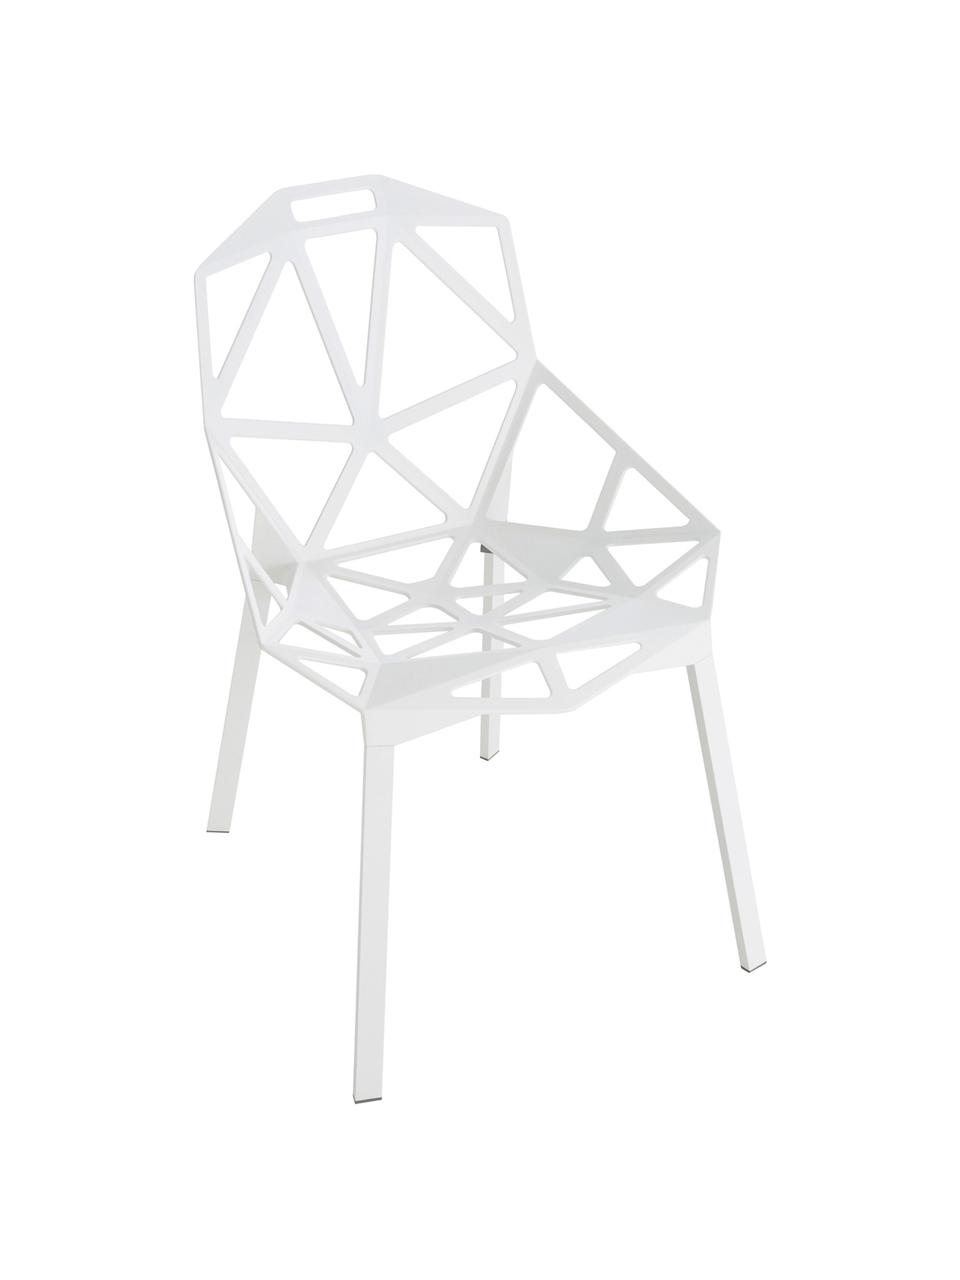 Design-Metallstuhl Chair One, Aluminium, druckgegossen, polyester-lackiert, Weiß, B 55 x T 59 cm